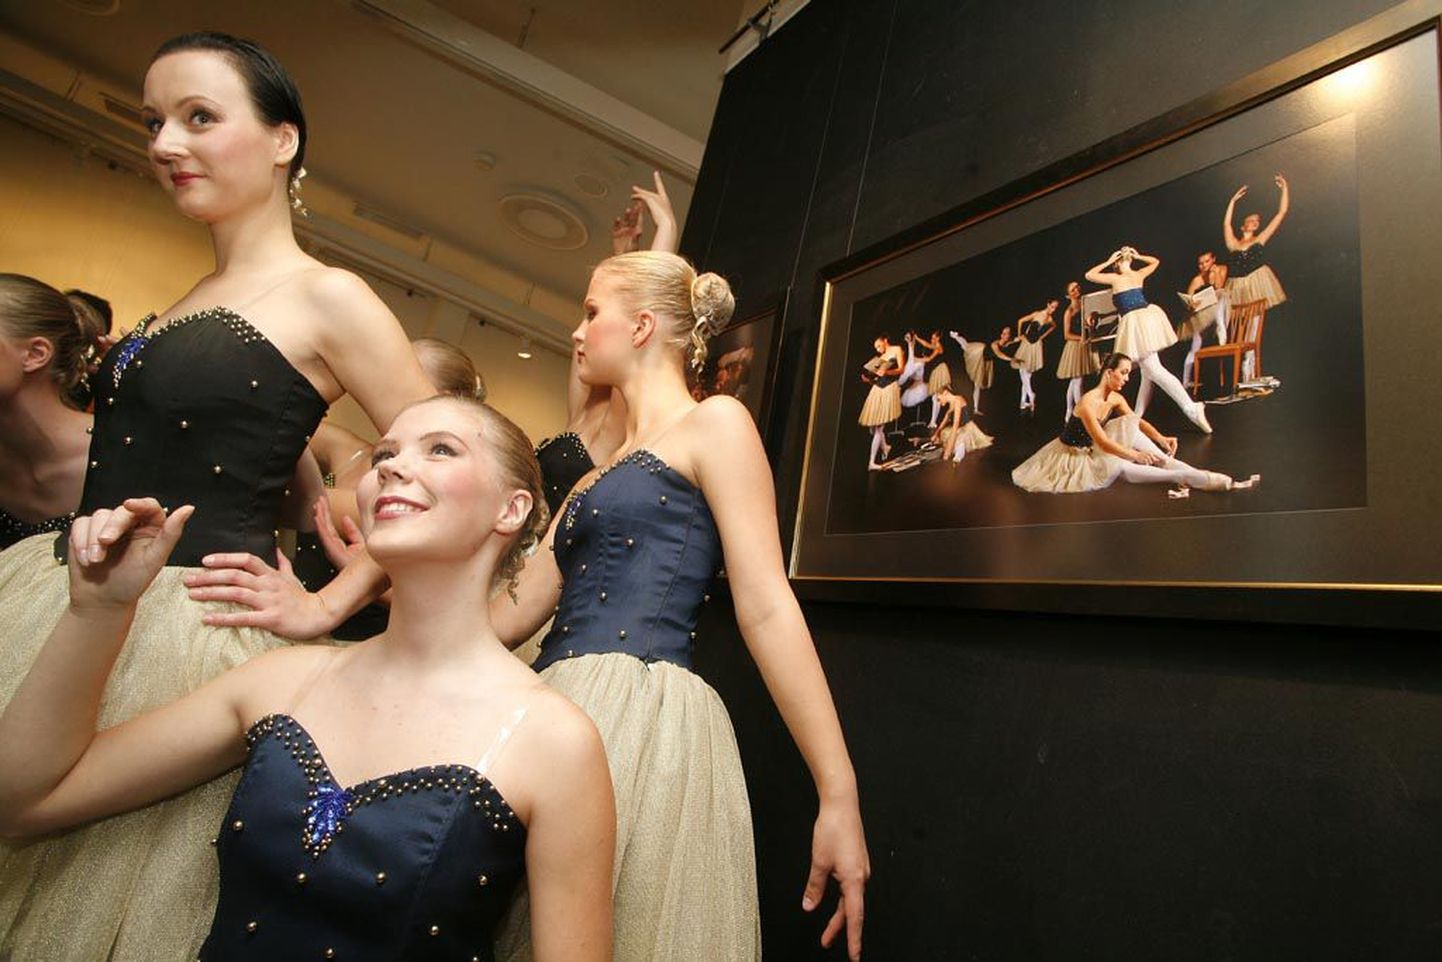 Näituse avamist kaunistasid Pärnu Kunstide maja Kersti Adamsoni balletistuudio neiud, kes ühtlasi on ühe väljapandud fotoseeria peategelased.